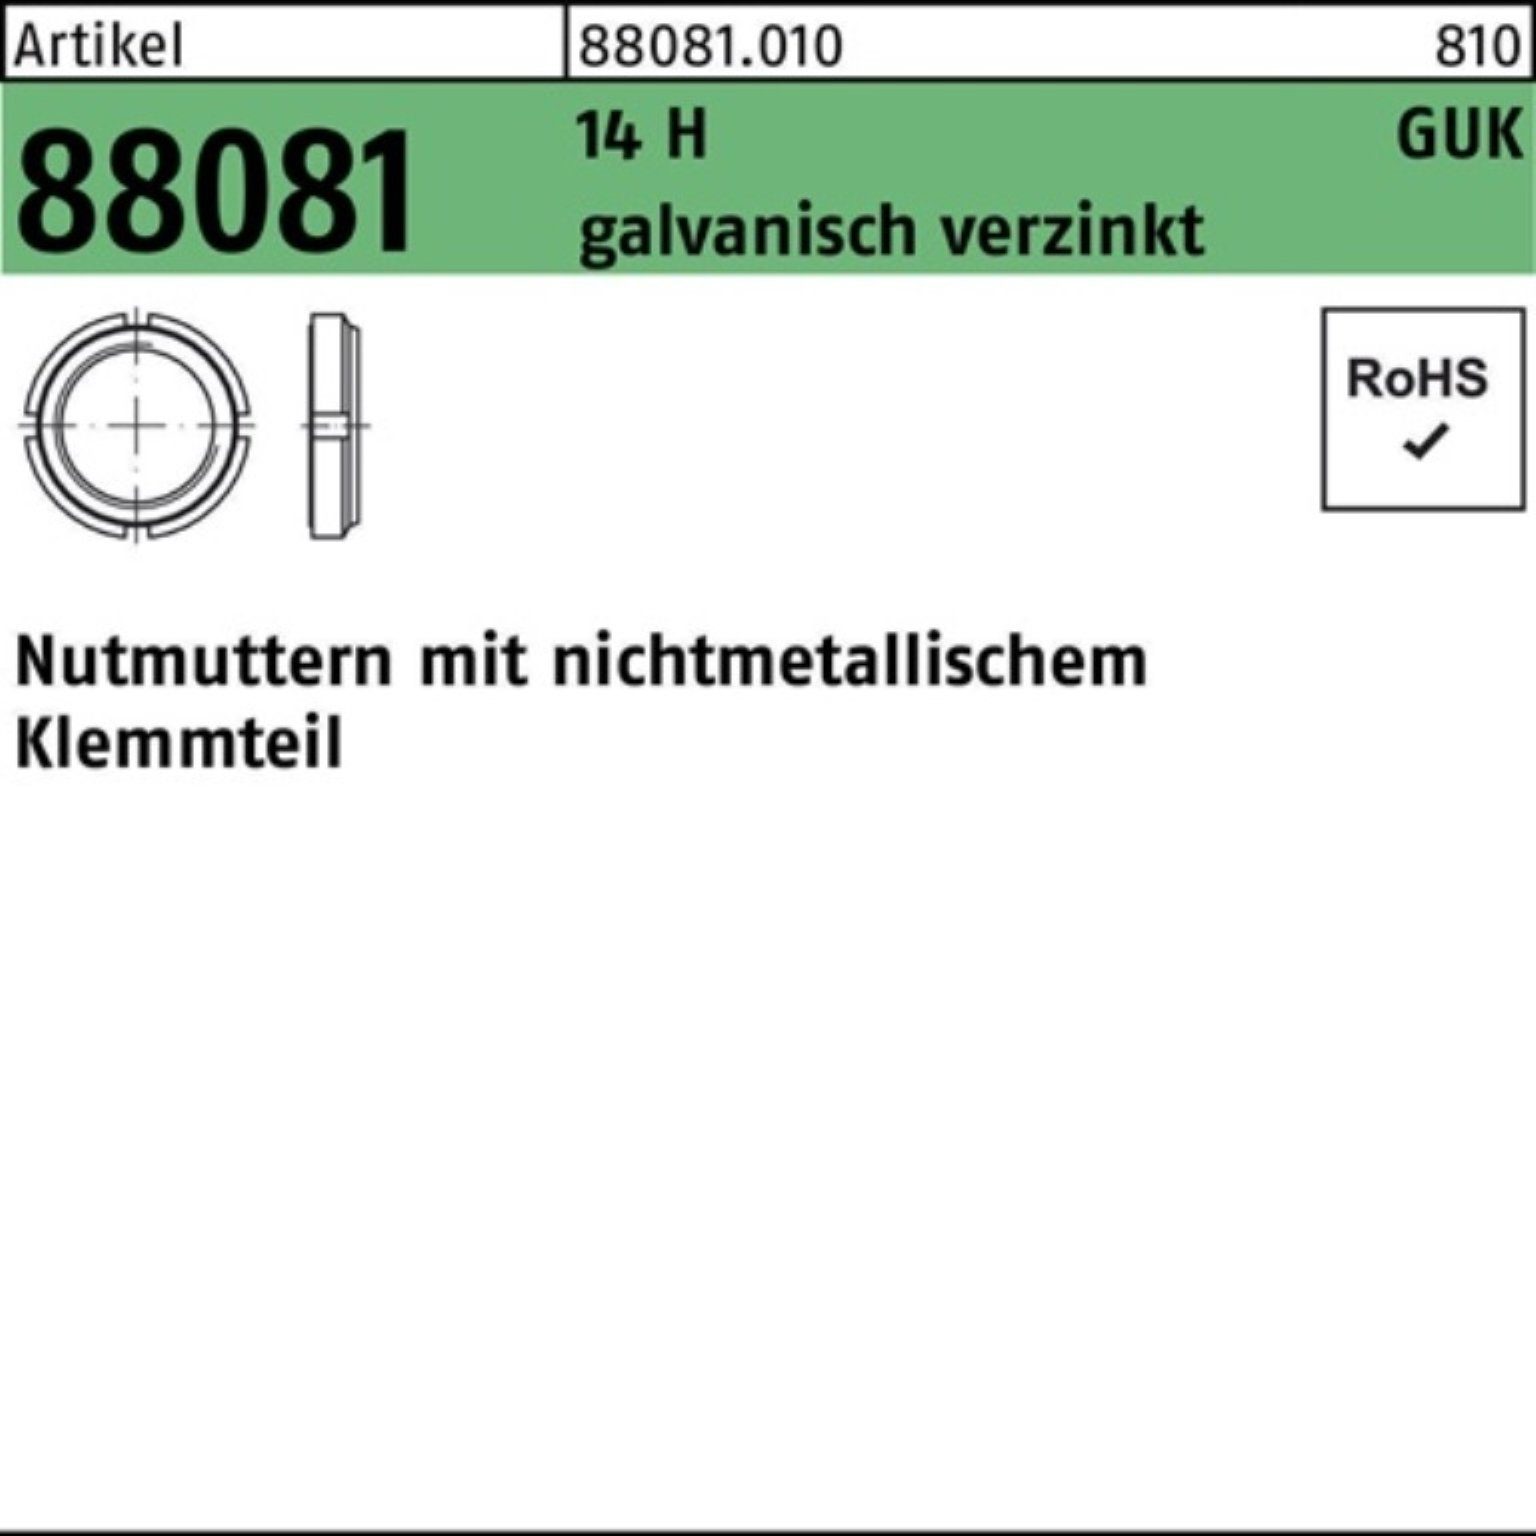 Reyher Nutmutter 100er Pack Nutmutter R 88081 Klemmteil GUK 6/M 30x1,5 14 H galv.verz.